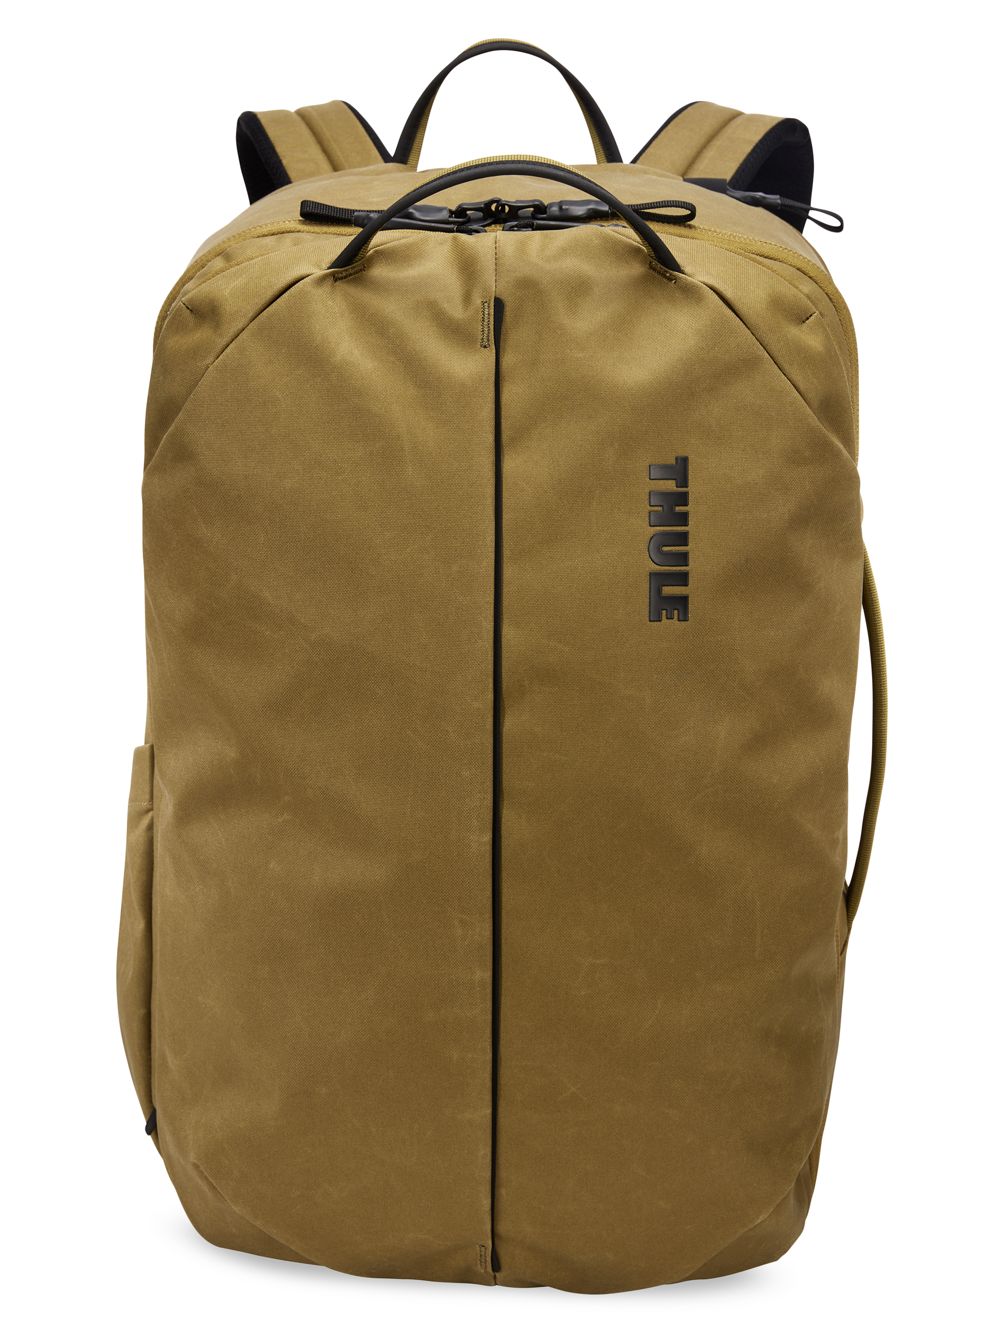 Рюкзак Aion для путешествий Thule рюкзак aion 28 л из переработанного материала thule нутрия